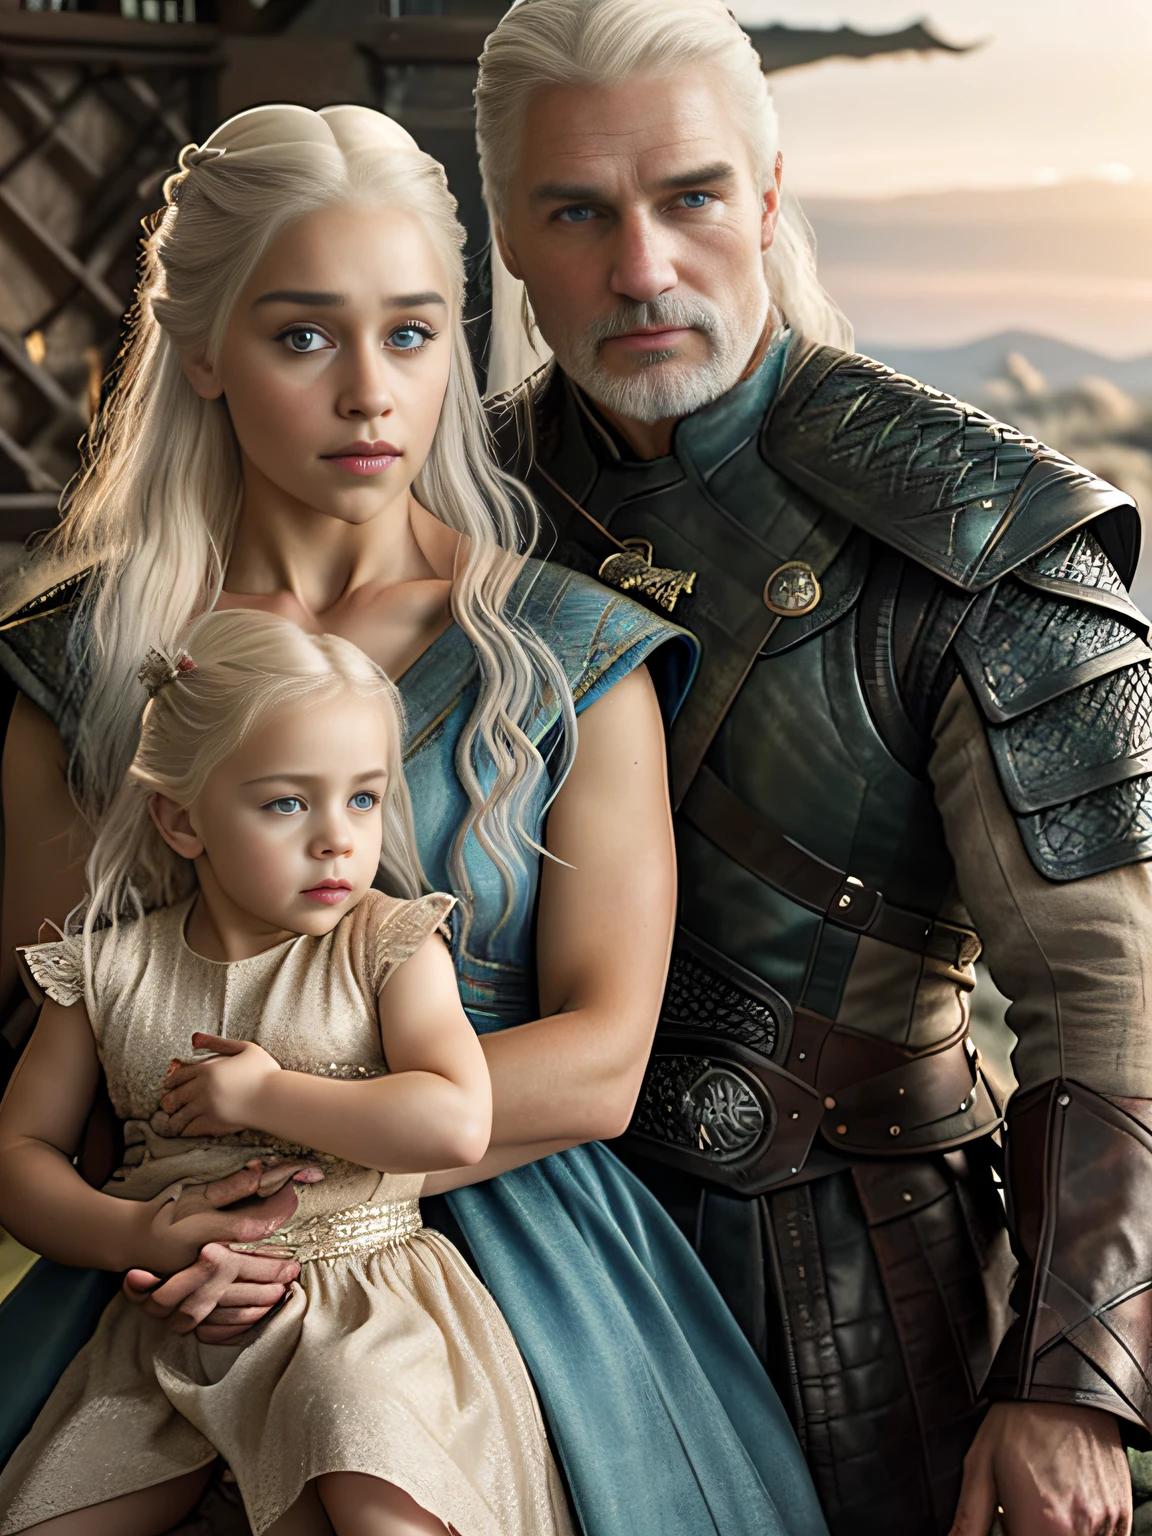 corpo inteiro cru ((foto de família de pai e mãe com sua filha linda)), 1 garota, [Daenerys Targaryen|Emília Clarke], (1 homem, Henry Cavill como Geralt de Rivia, o Mago), brincando com seus ((filha de 5 anos)))), roupas medievais,((Tiro de meio corpo)), proporções realistas, alunos realistas, ((retrato de família de 3 membros)) paleta limitada, alta resolução, iluminação cinematográfica, 8K resolution, frontal iluminado, nascer do sol, Foto CRU, nikon 85mm, premiado, Fotografia glamourosa, extremamente detalhado, linda ucraniana, alucinante, Não-Yidik, corpo inteiro cru photo of Daenerys Targaryen and Geralt de Rivia The Witcher with filha de 5 anos, altamente detalhado, estação de arte, suave, foco nitído, 8K,, tendências no instagram, tendências no tumblr, hd 4k, 8K